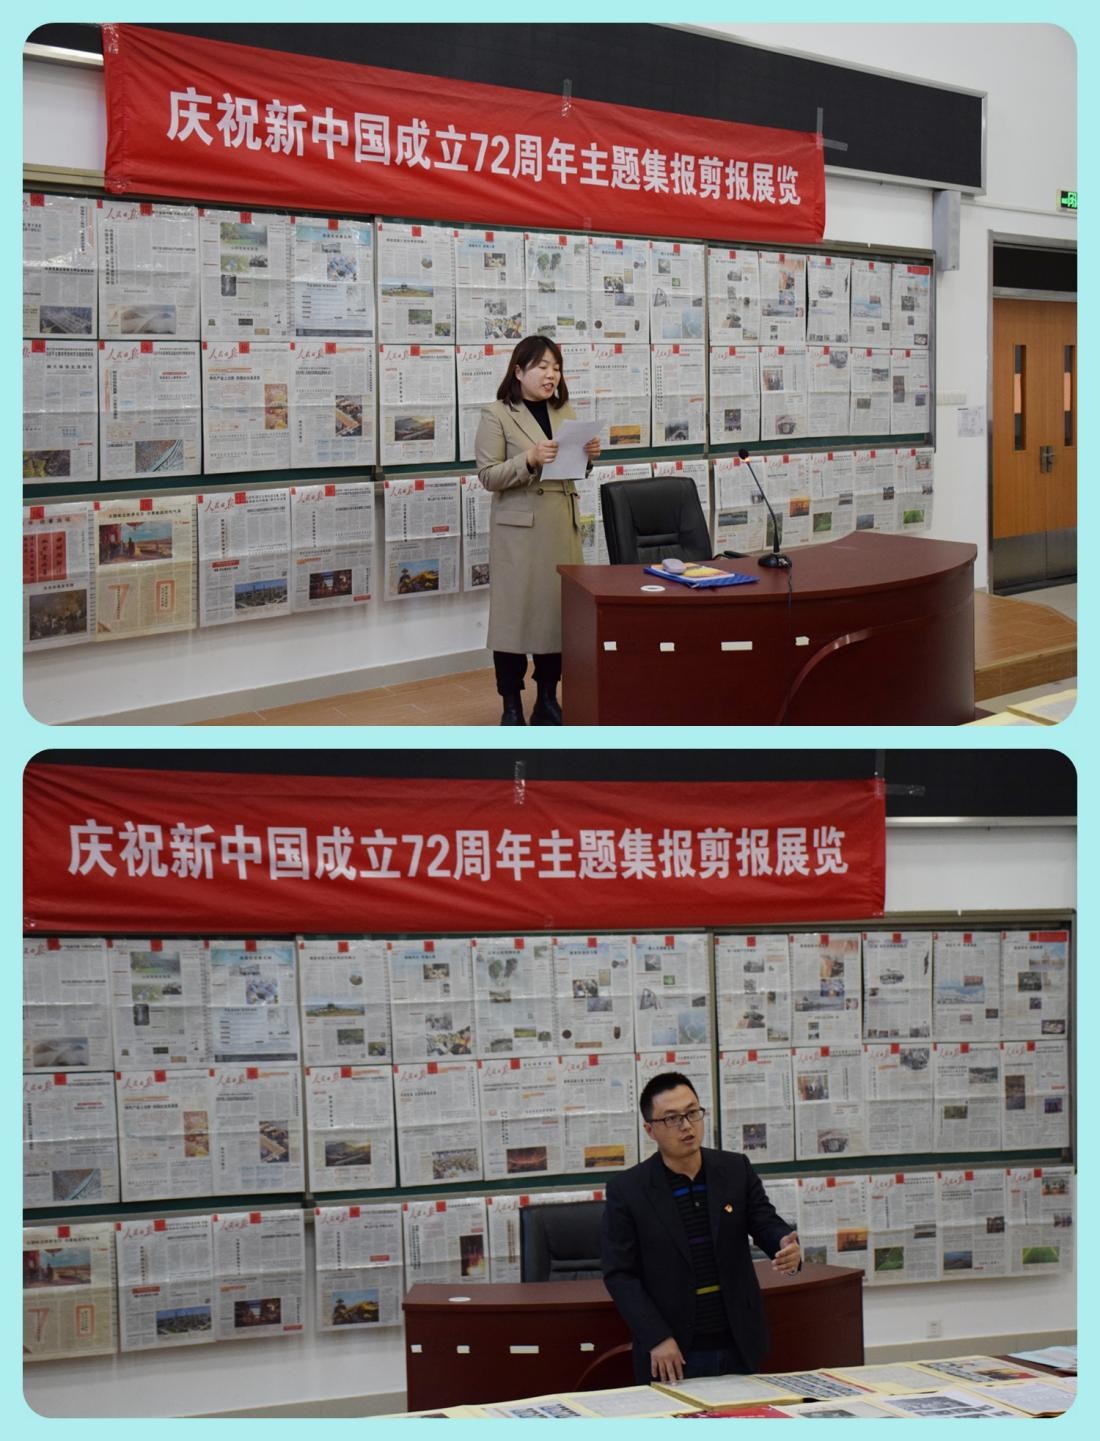 天津市实验中学滨海学校举办庆祝建国72周年集报剪报展